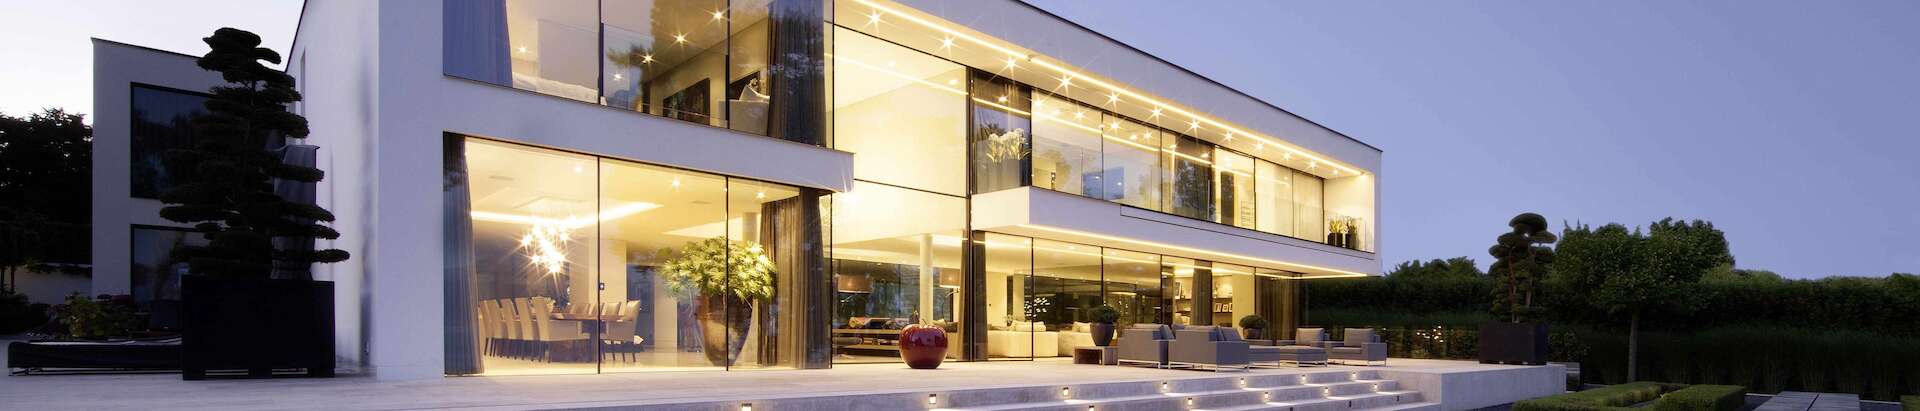 Moderne Villa mit Schiebefenstern höchster Sicherheit